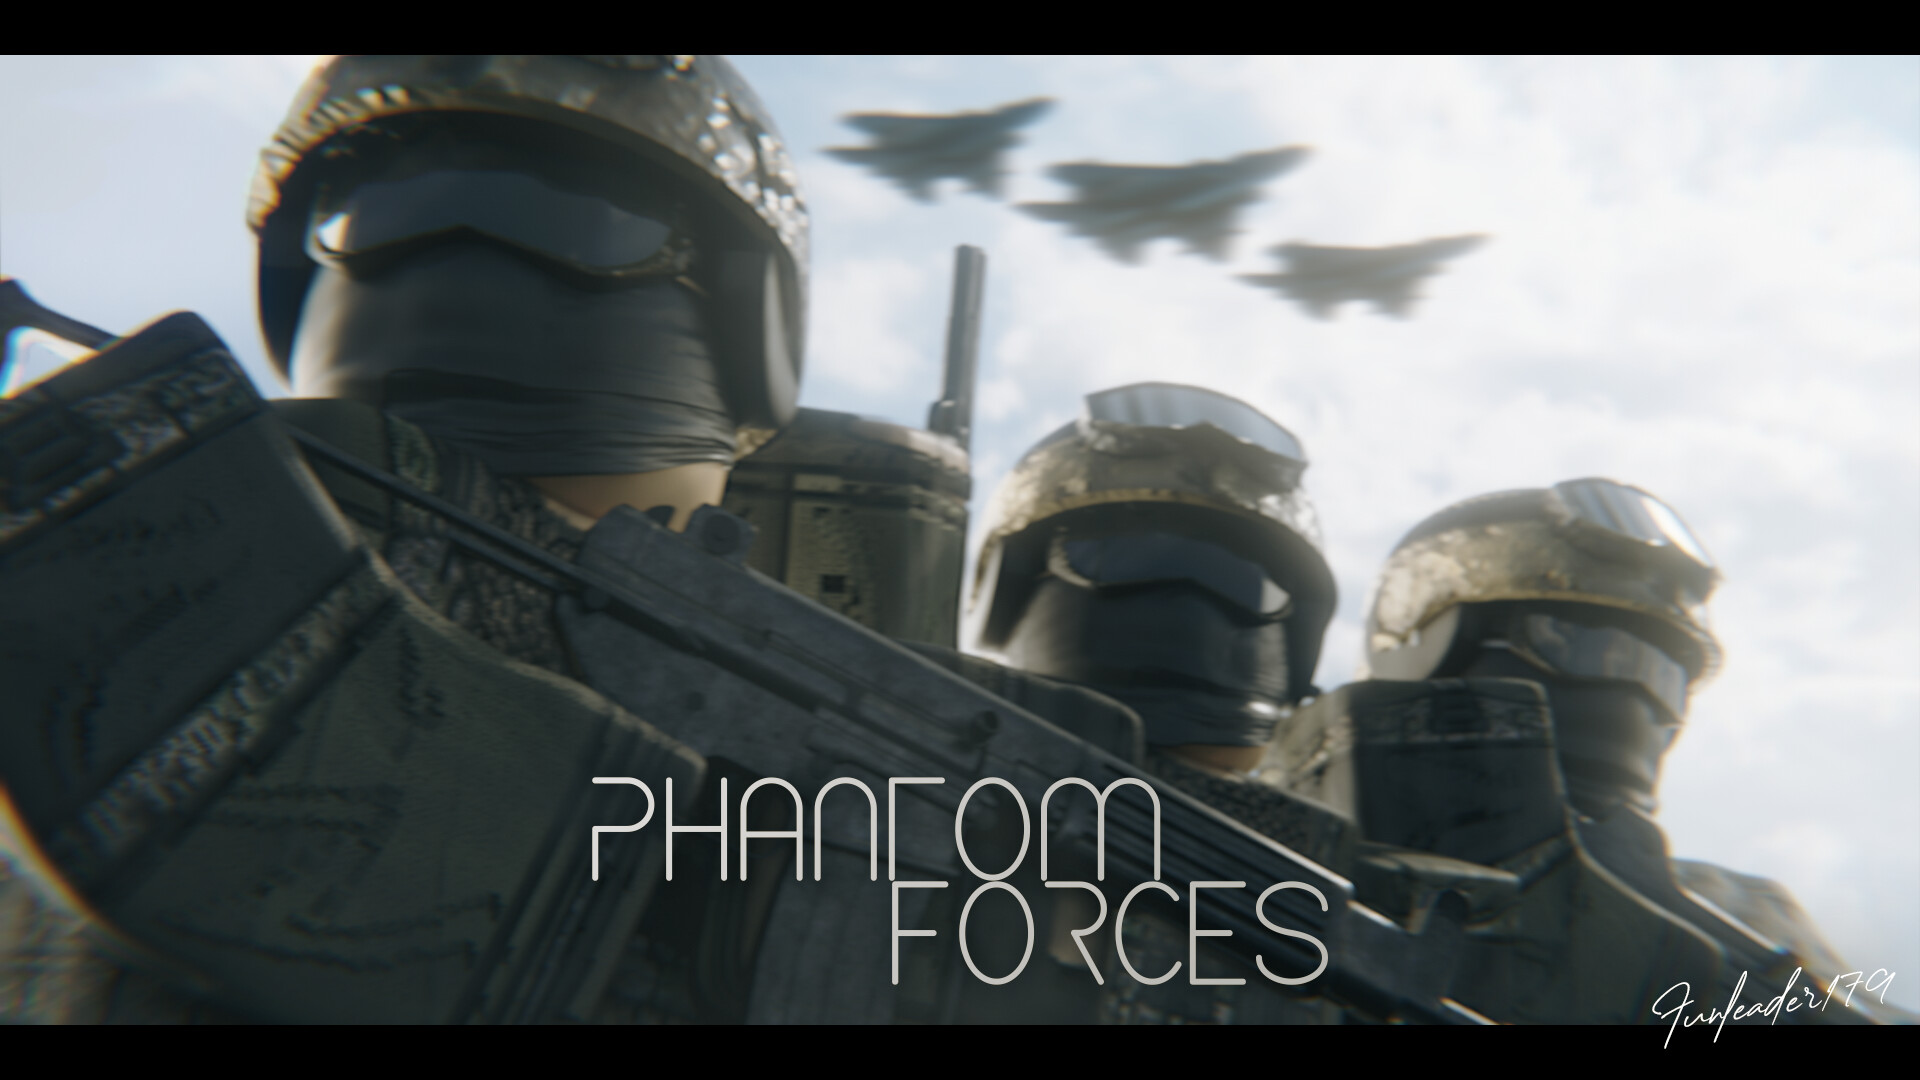 Phantom Forces